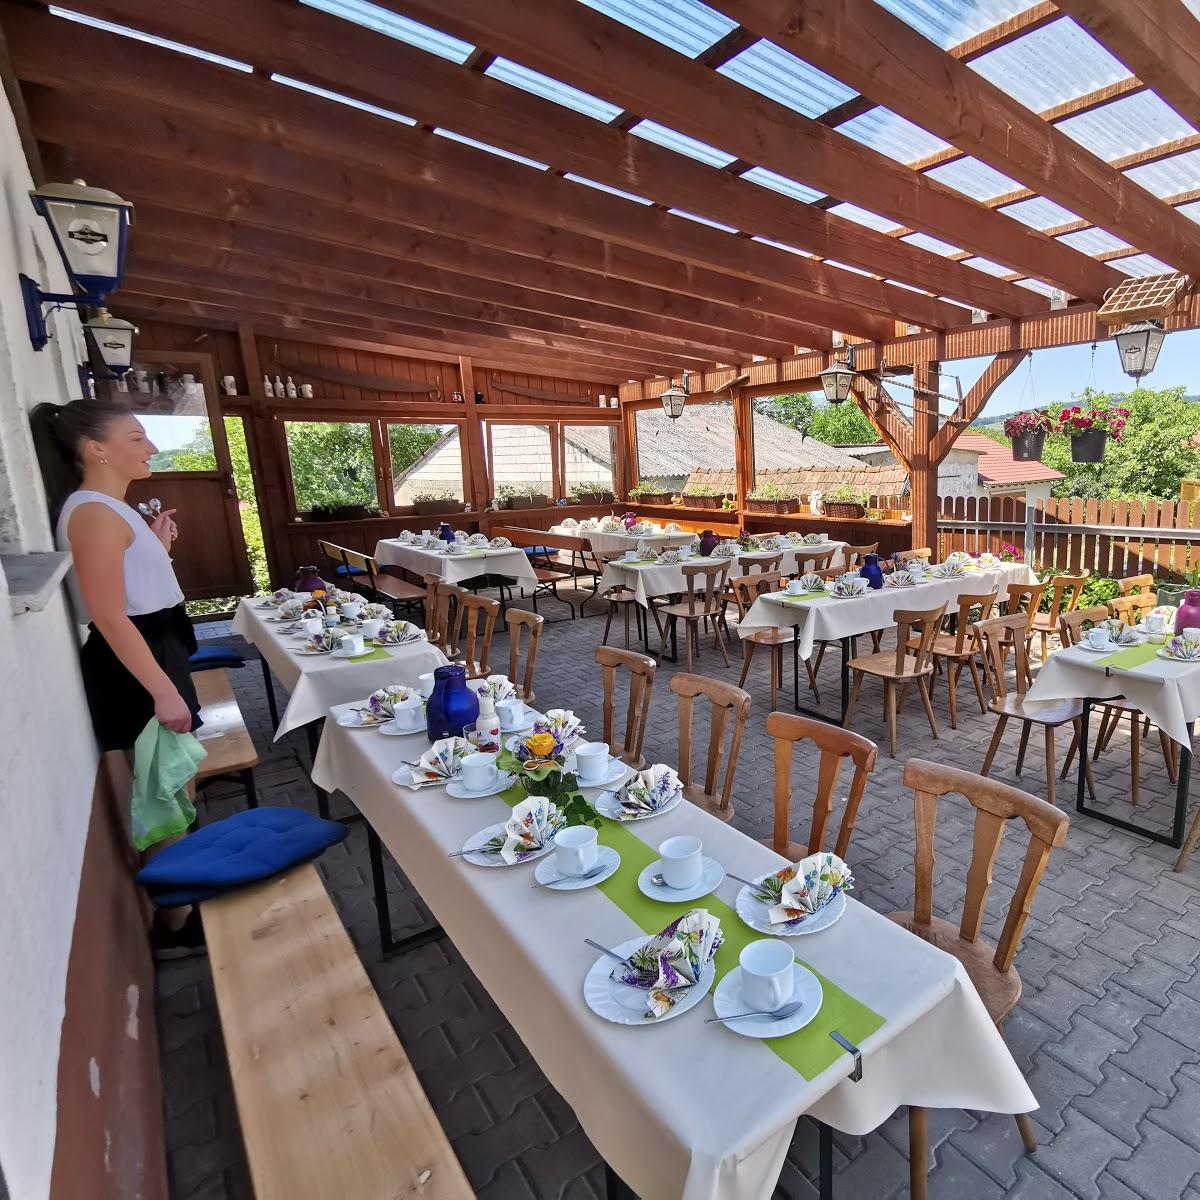 Restaurant "Gasthaus zum Schellenberg" in Kleinsendelbach